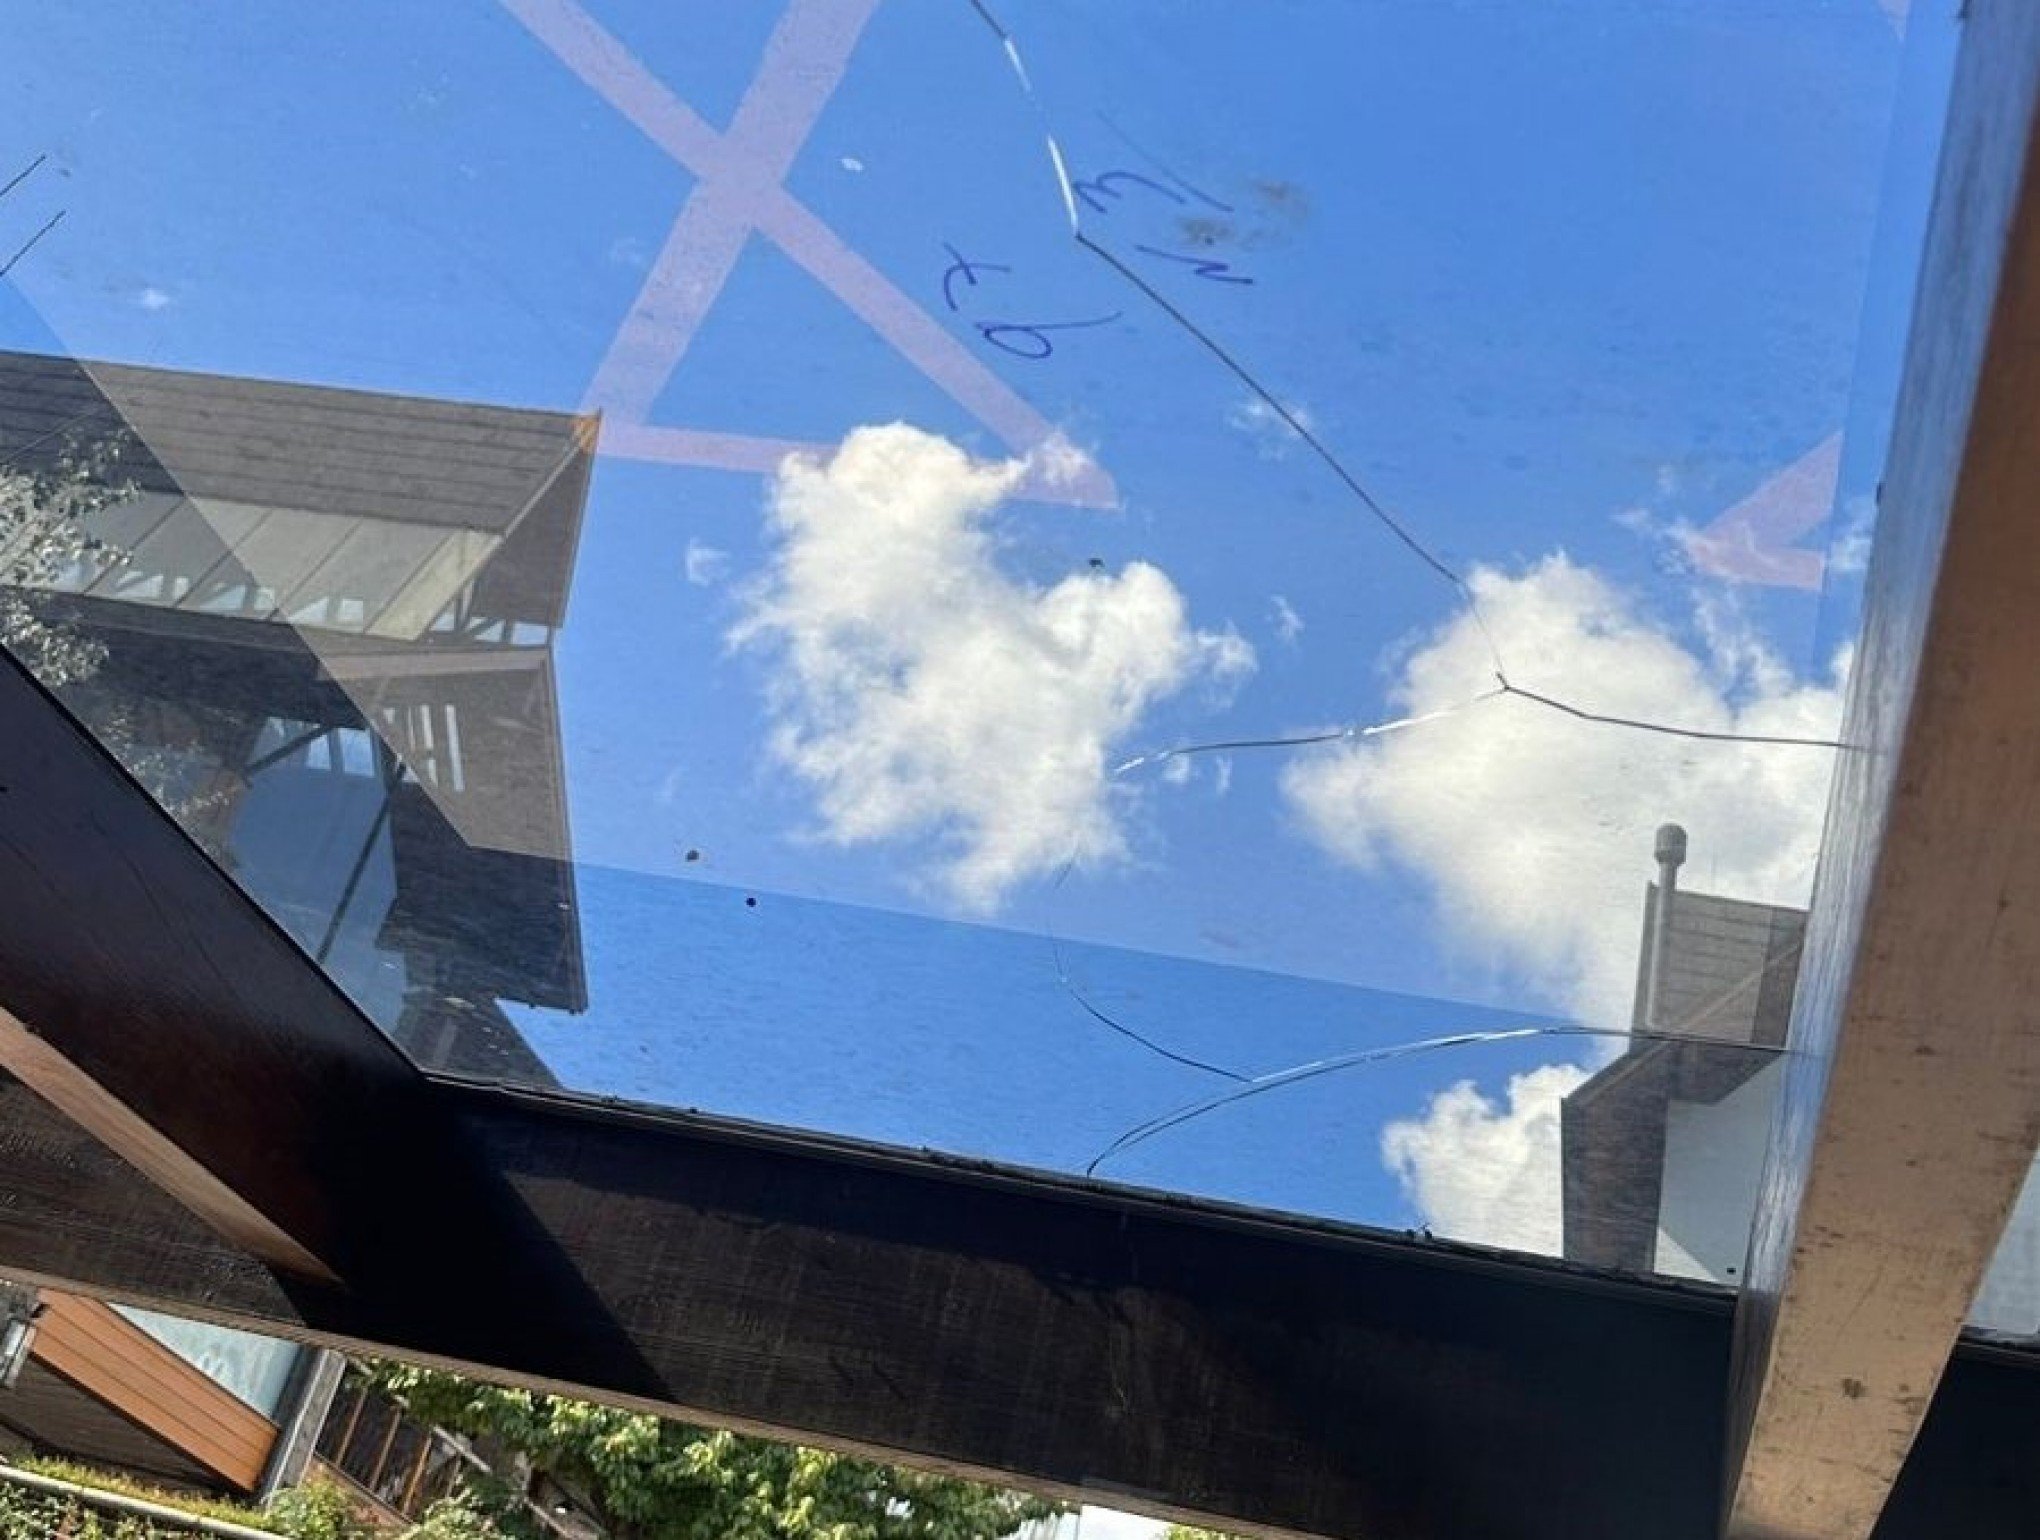 Paradas de ônibus de Gramado têm vidros quebrados dias após serem trocados